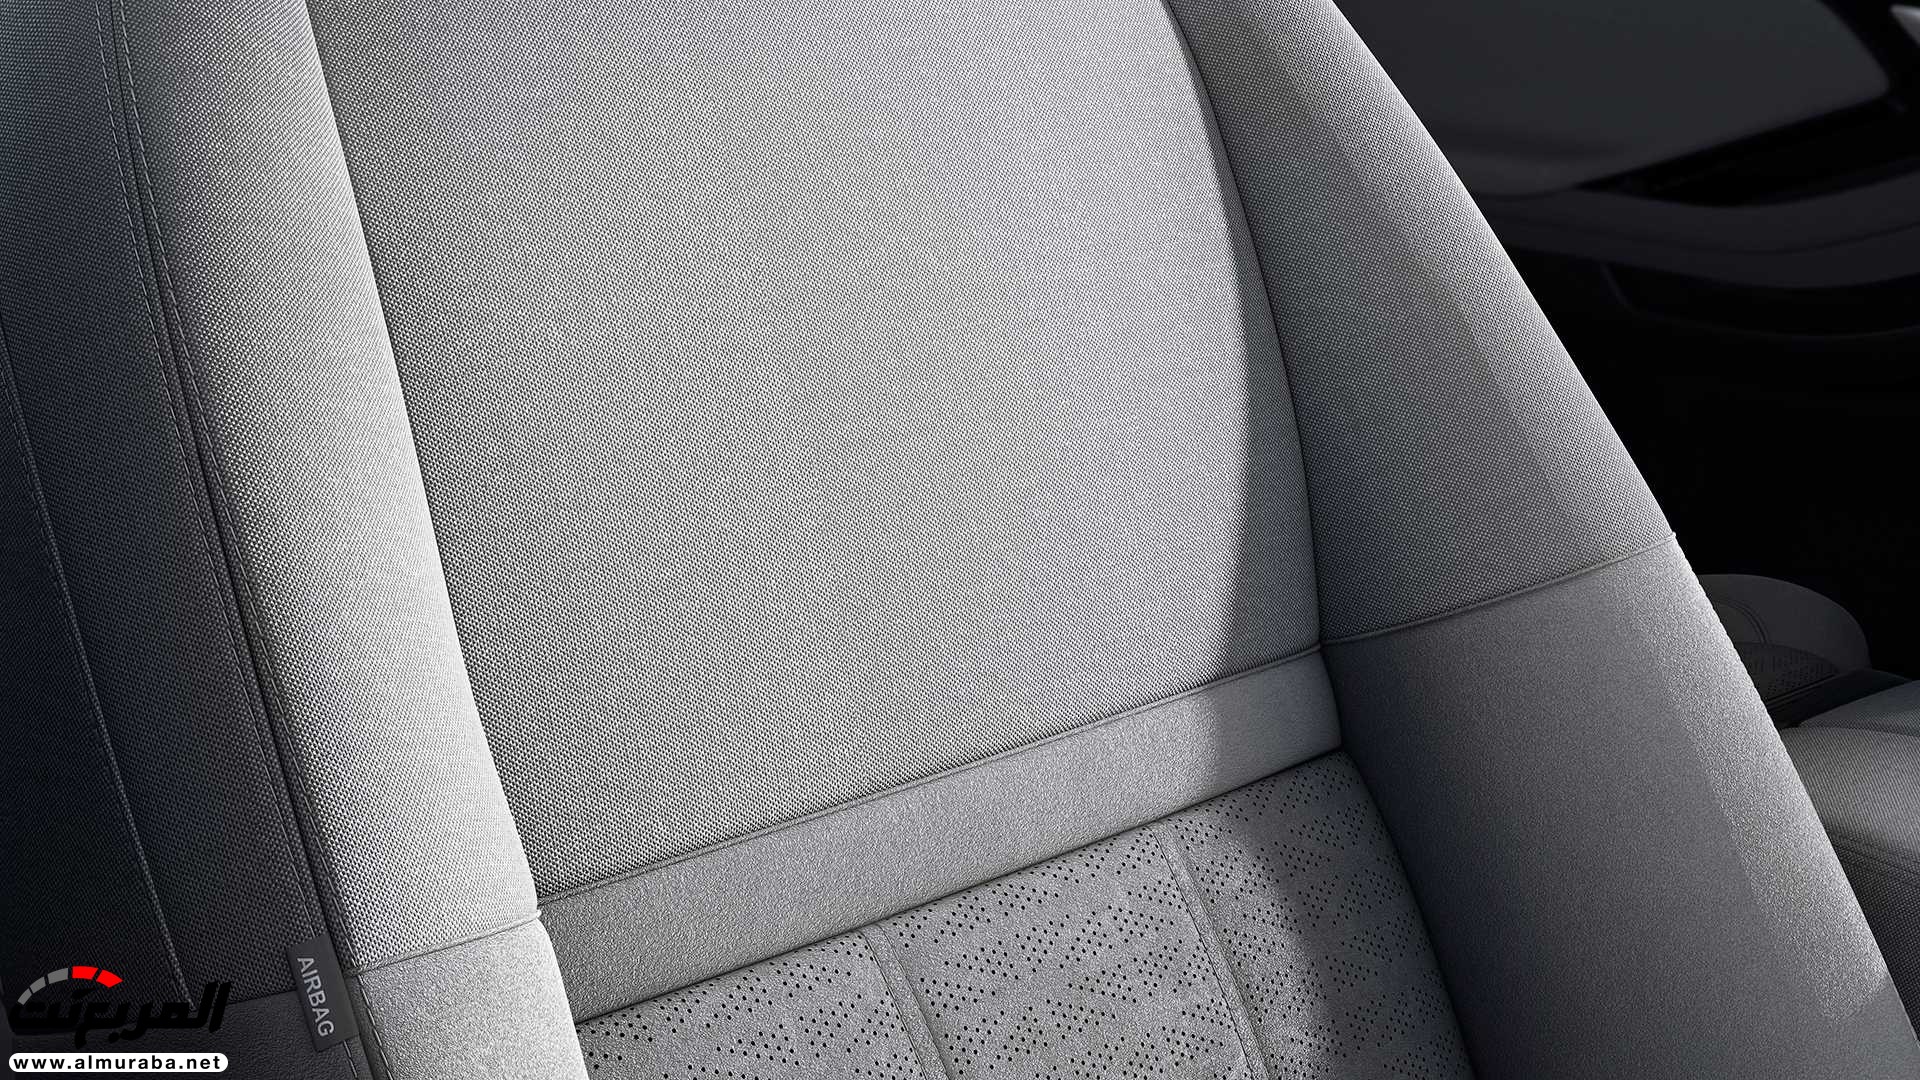 اهم 7 معلومات عن رنج روفر ايفوك 2020 الجديدة كلياً Range Rover Evoque 52